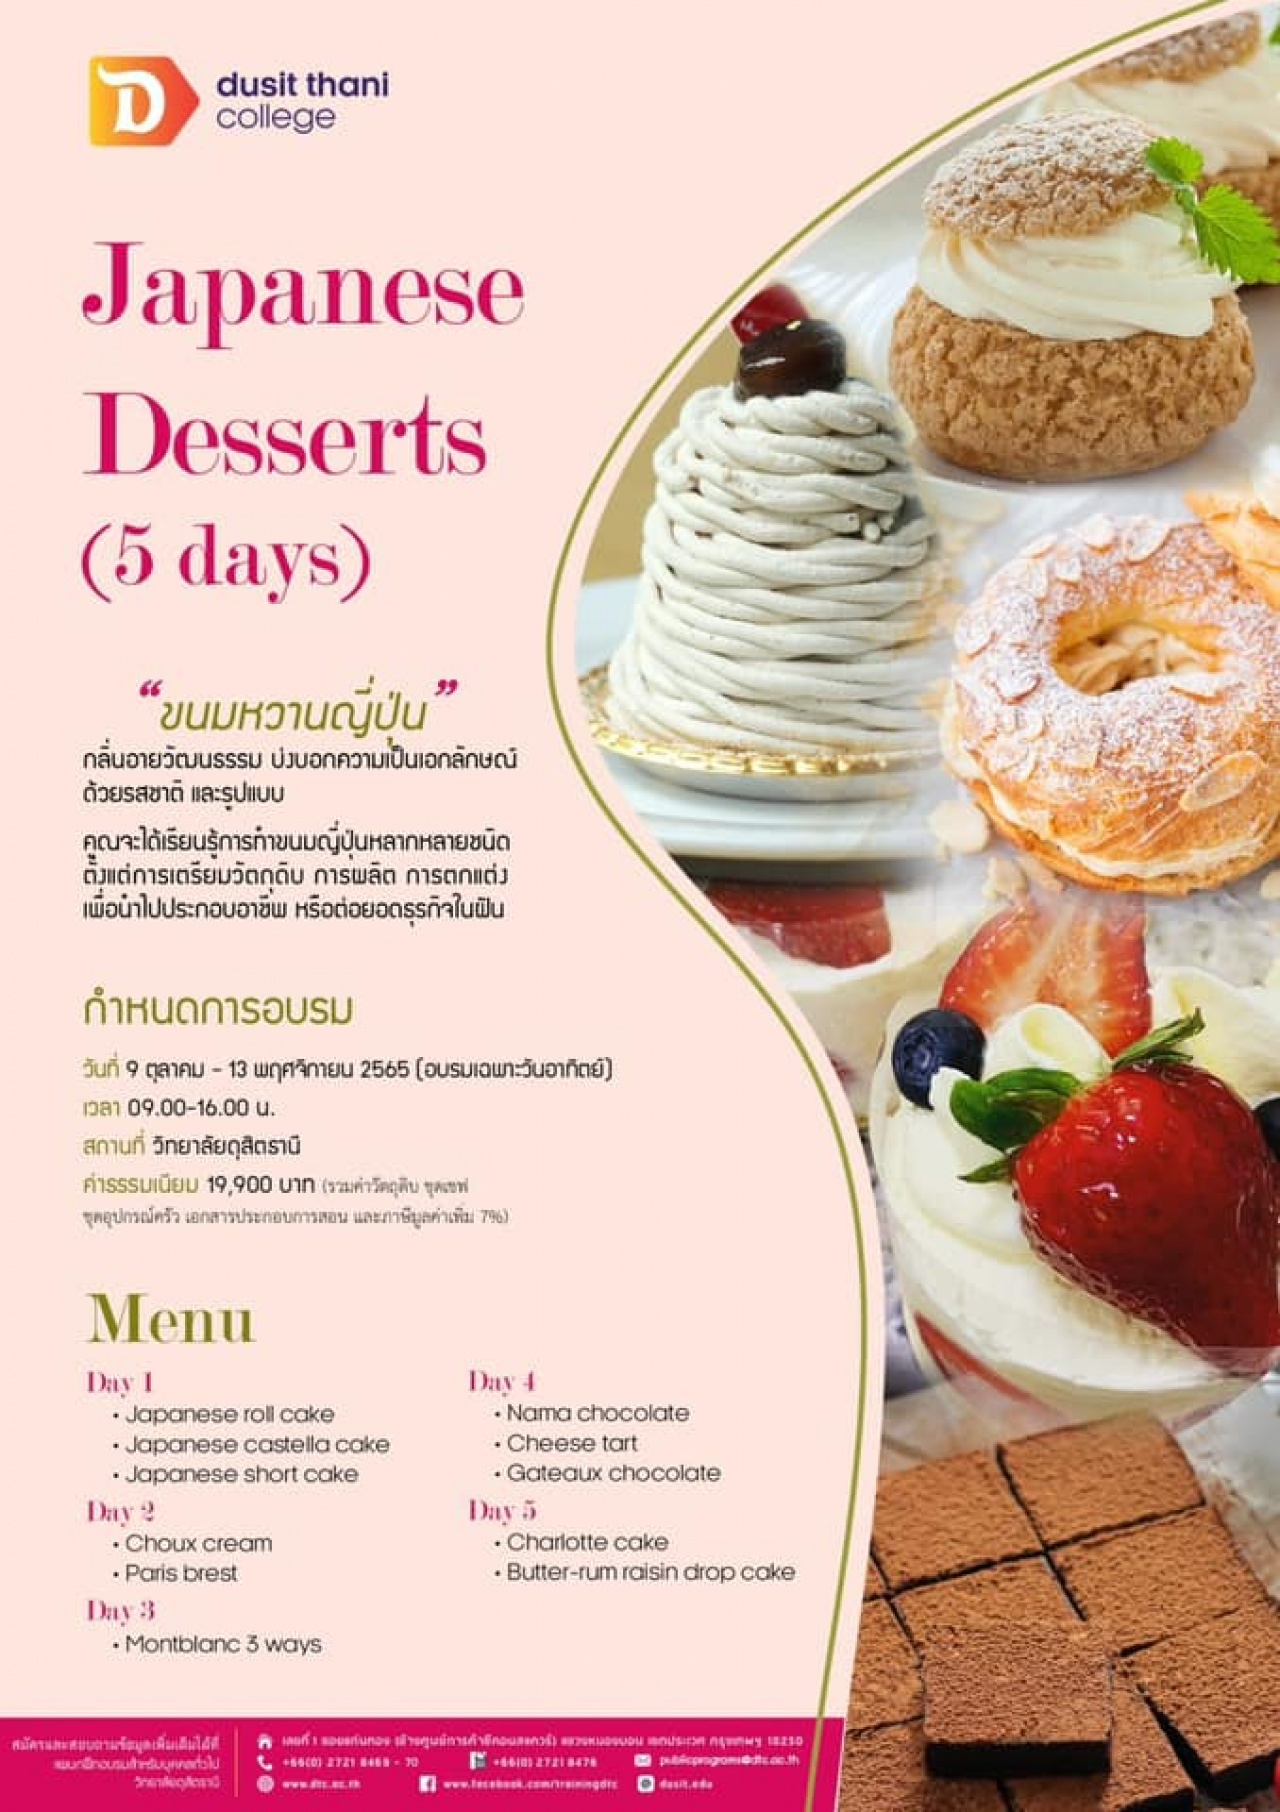 หลักสูตร Japanese Desserts 5days